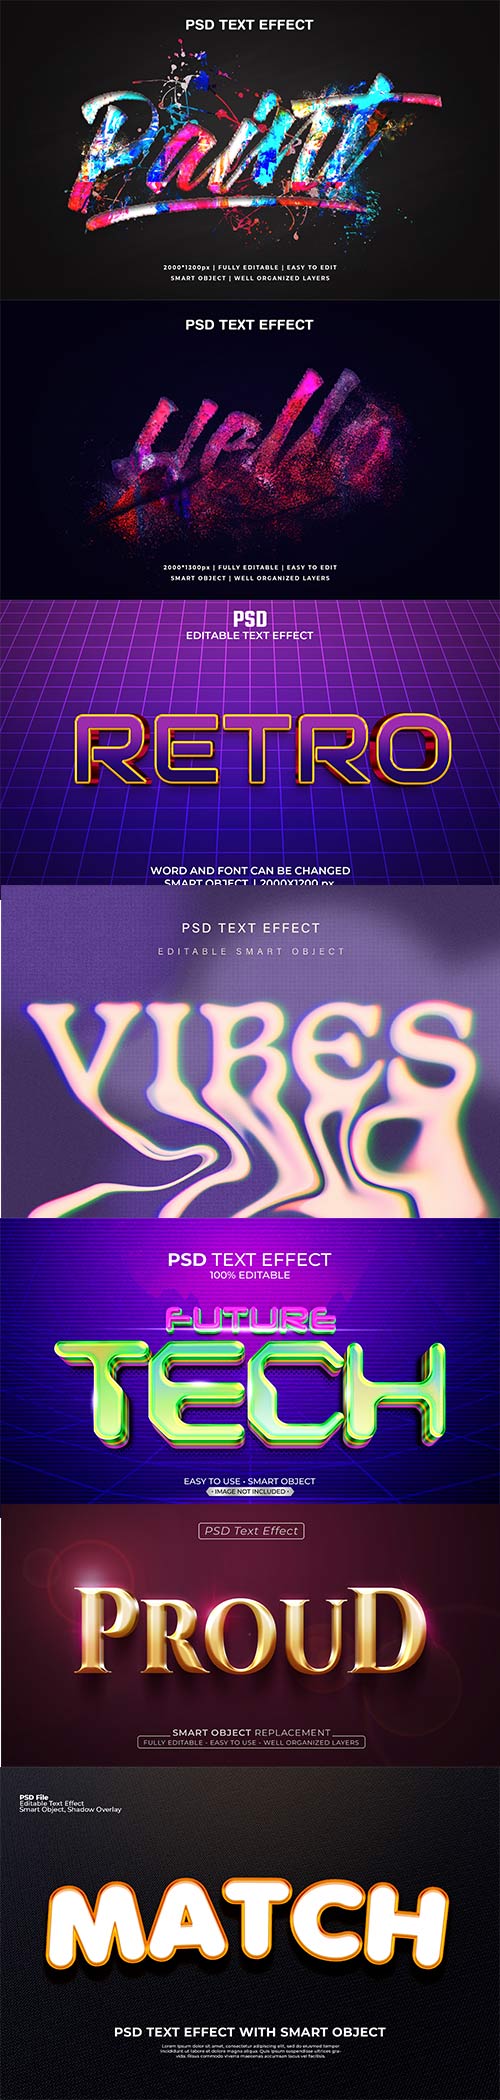 Psd text effect set vol 586